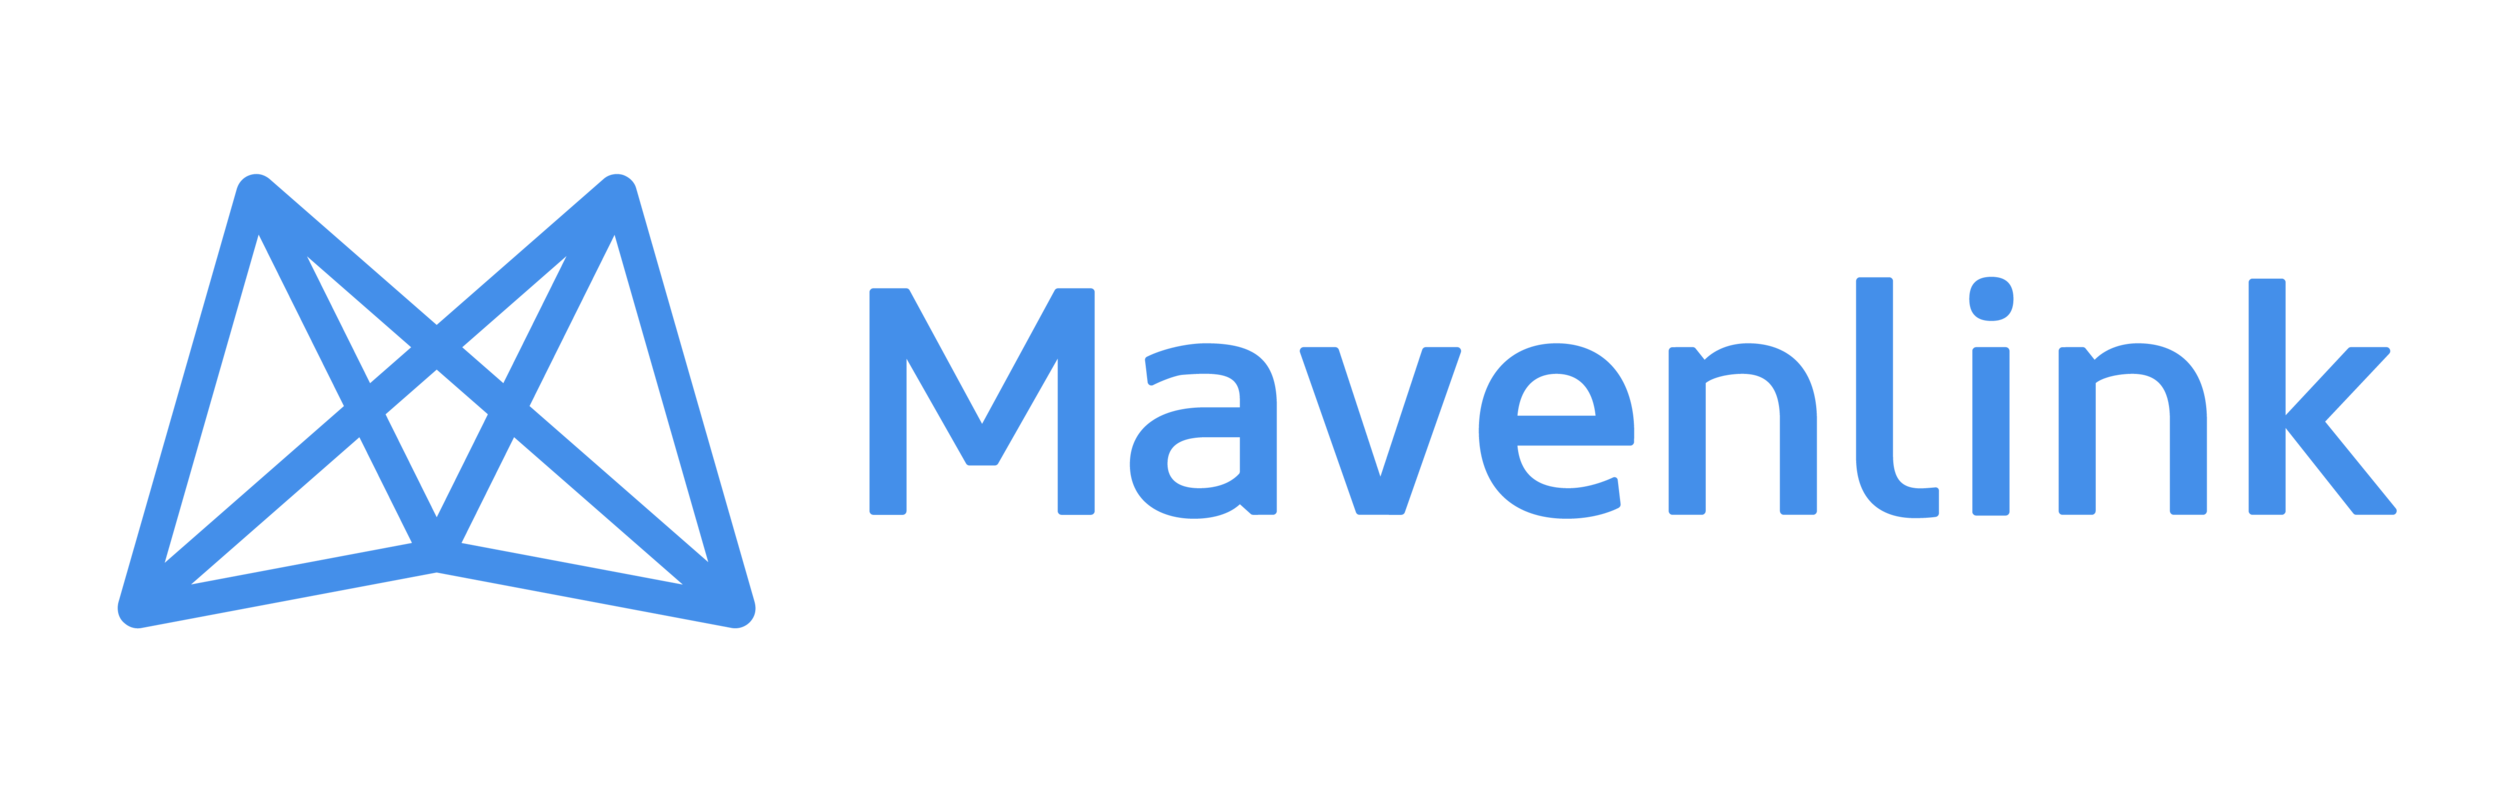 Mavenlink_Logo.png